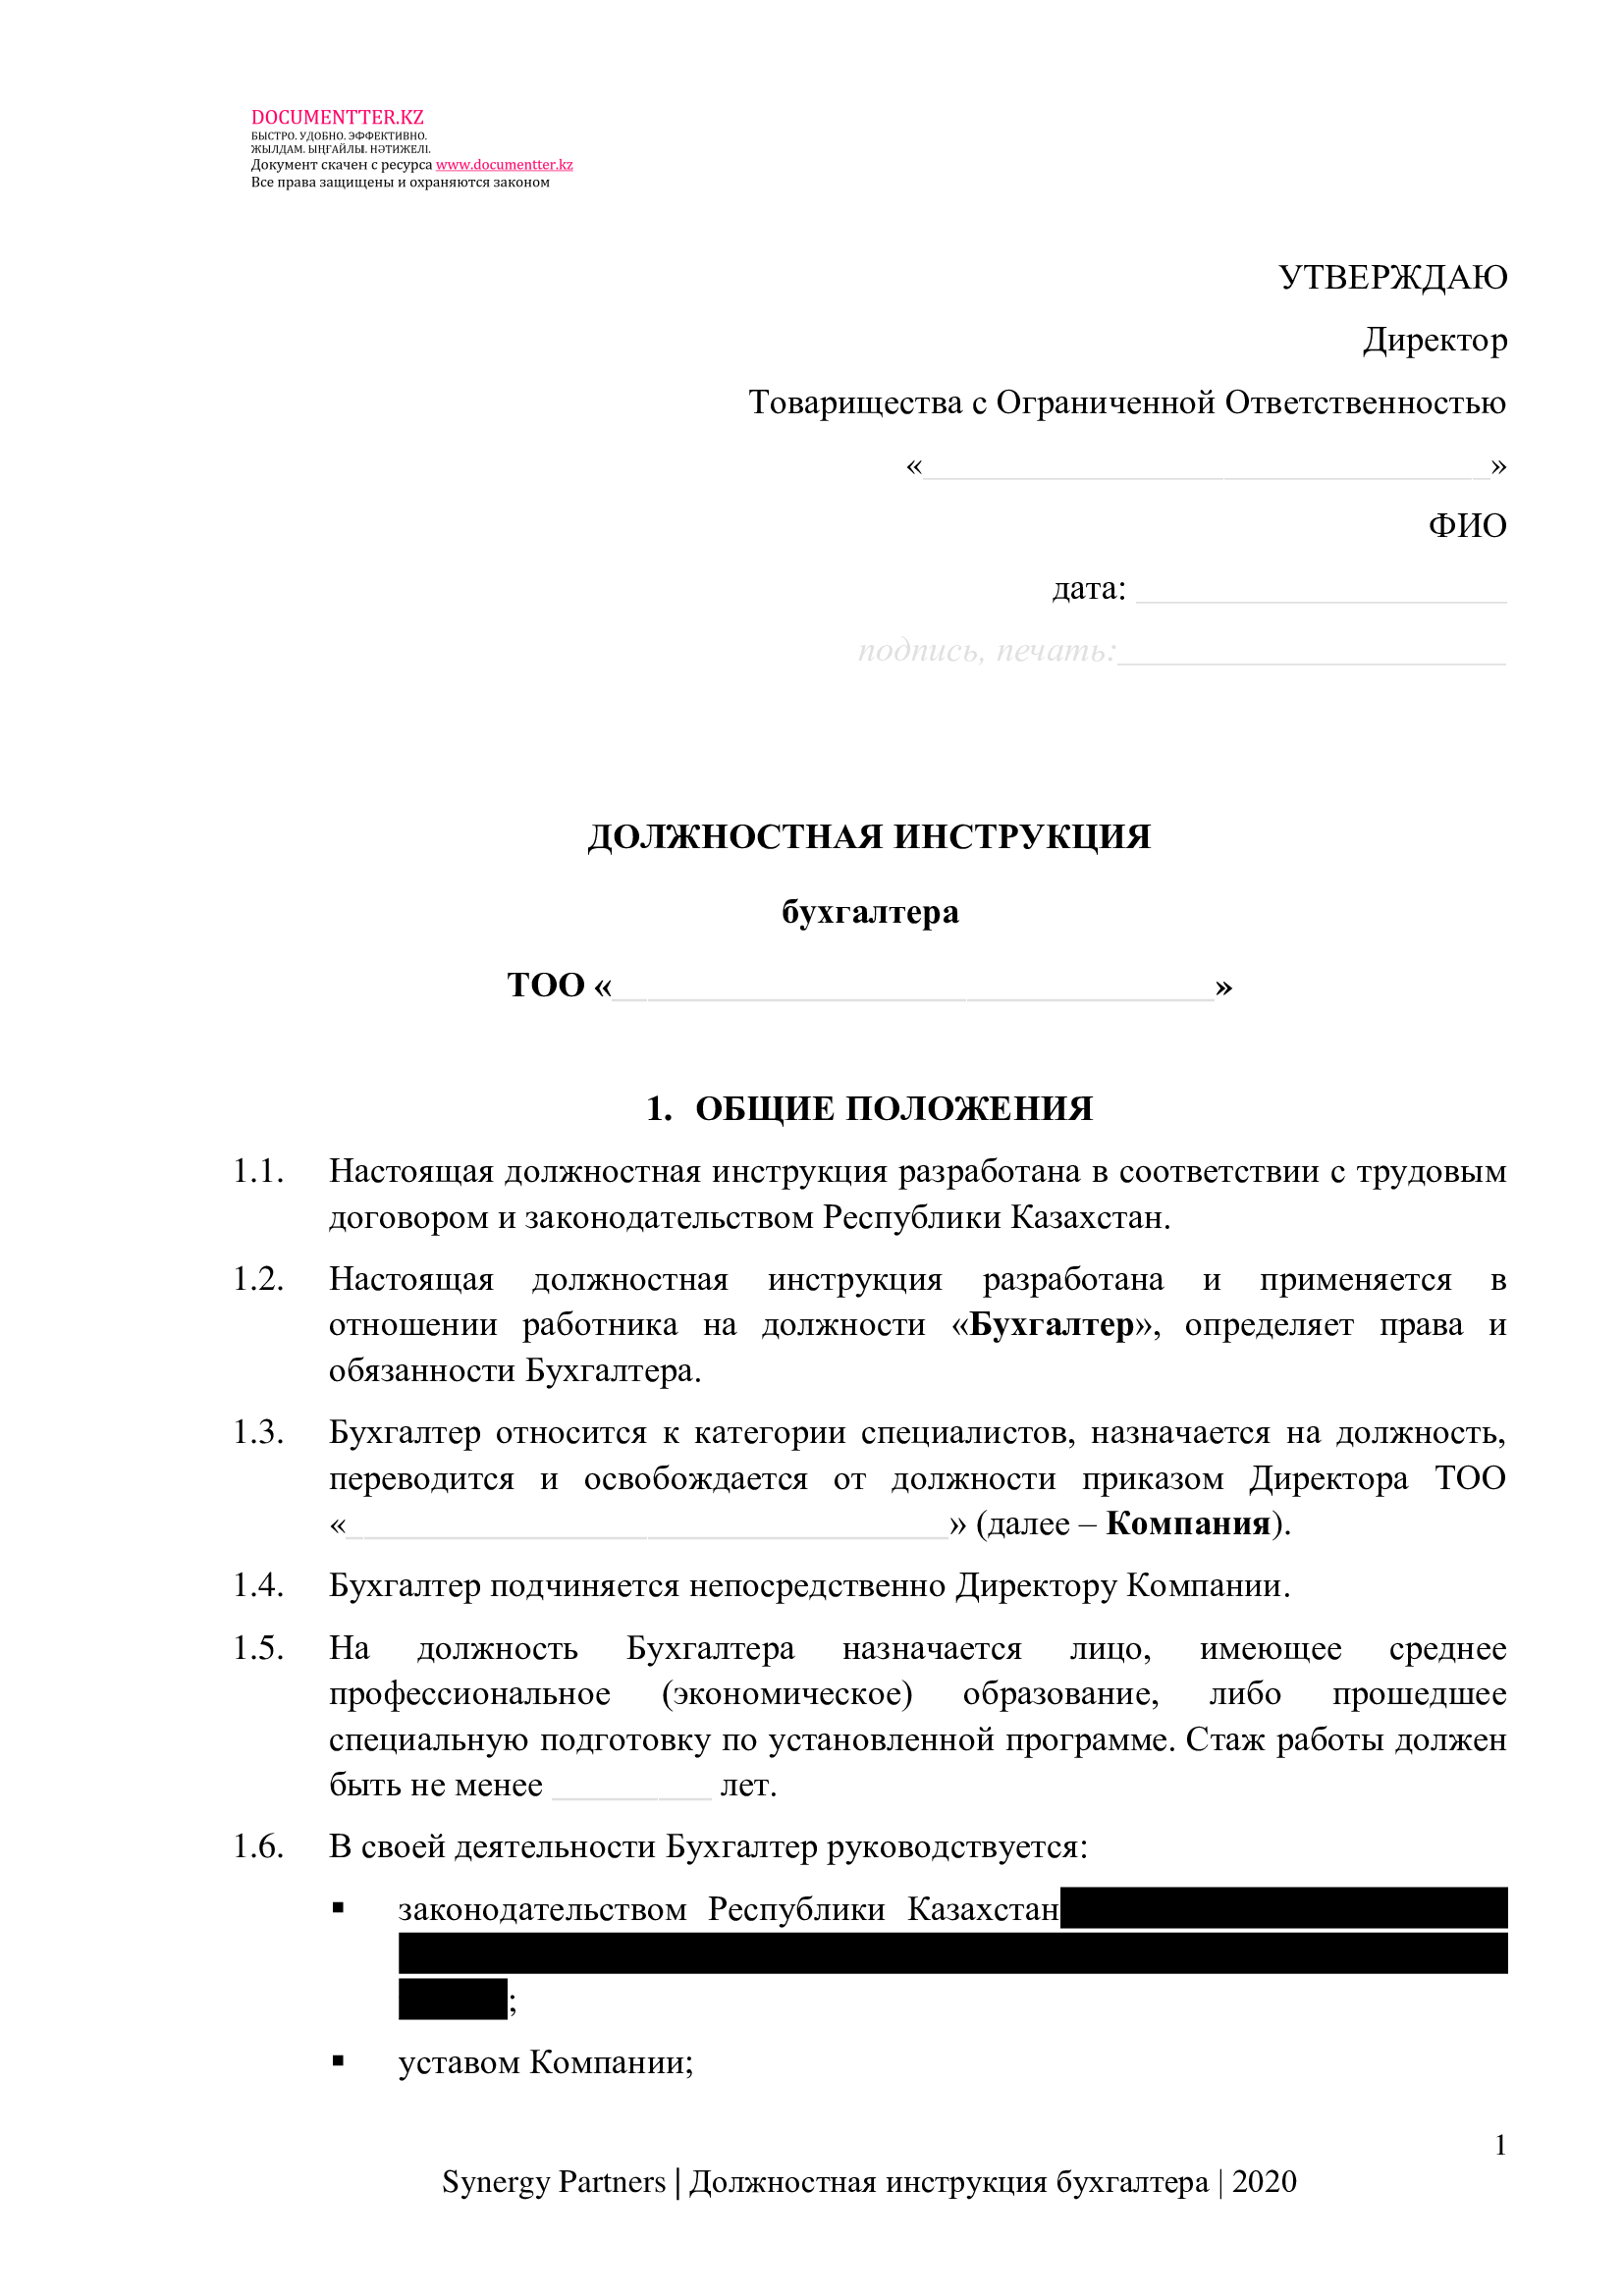 Должностая инструкция бухгалтера 6 | documentter.kz в Казахстане 